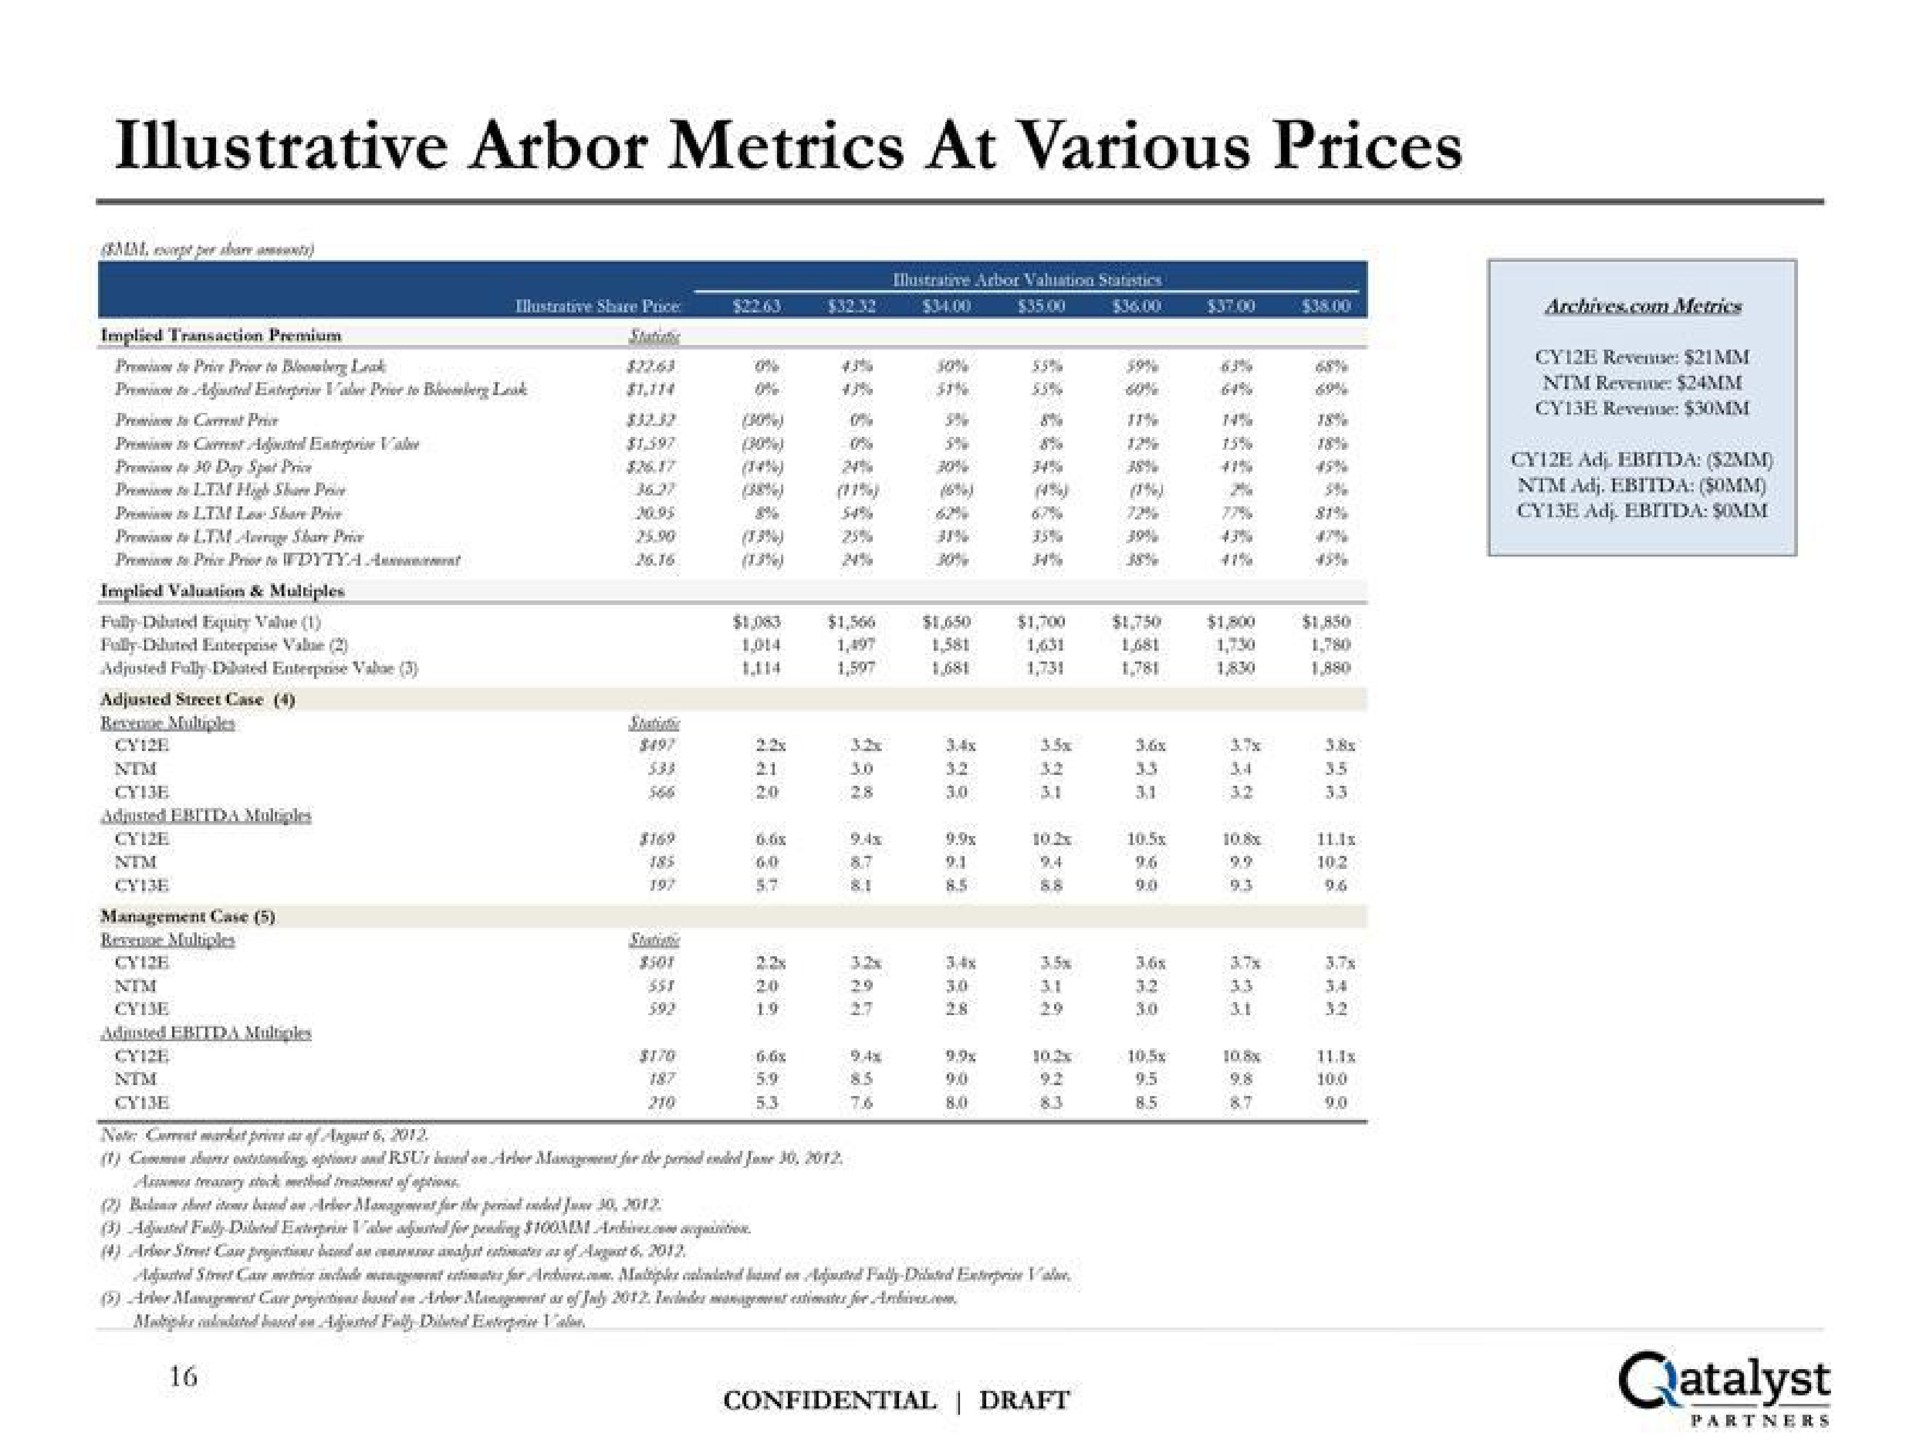 illustrative arbor metrics at various prices catalyst | Qatalyst Partners